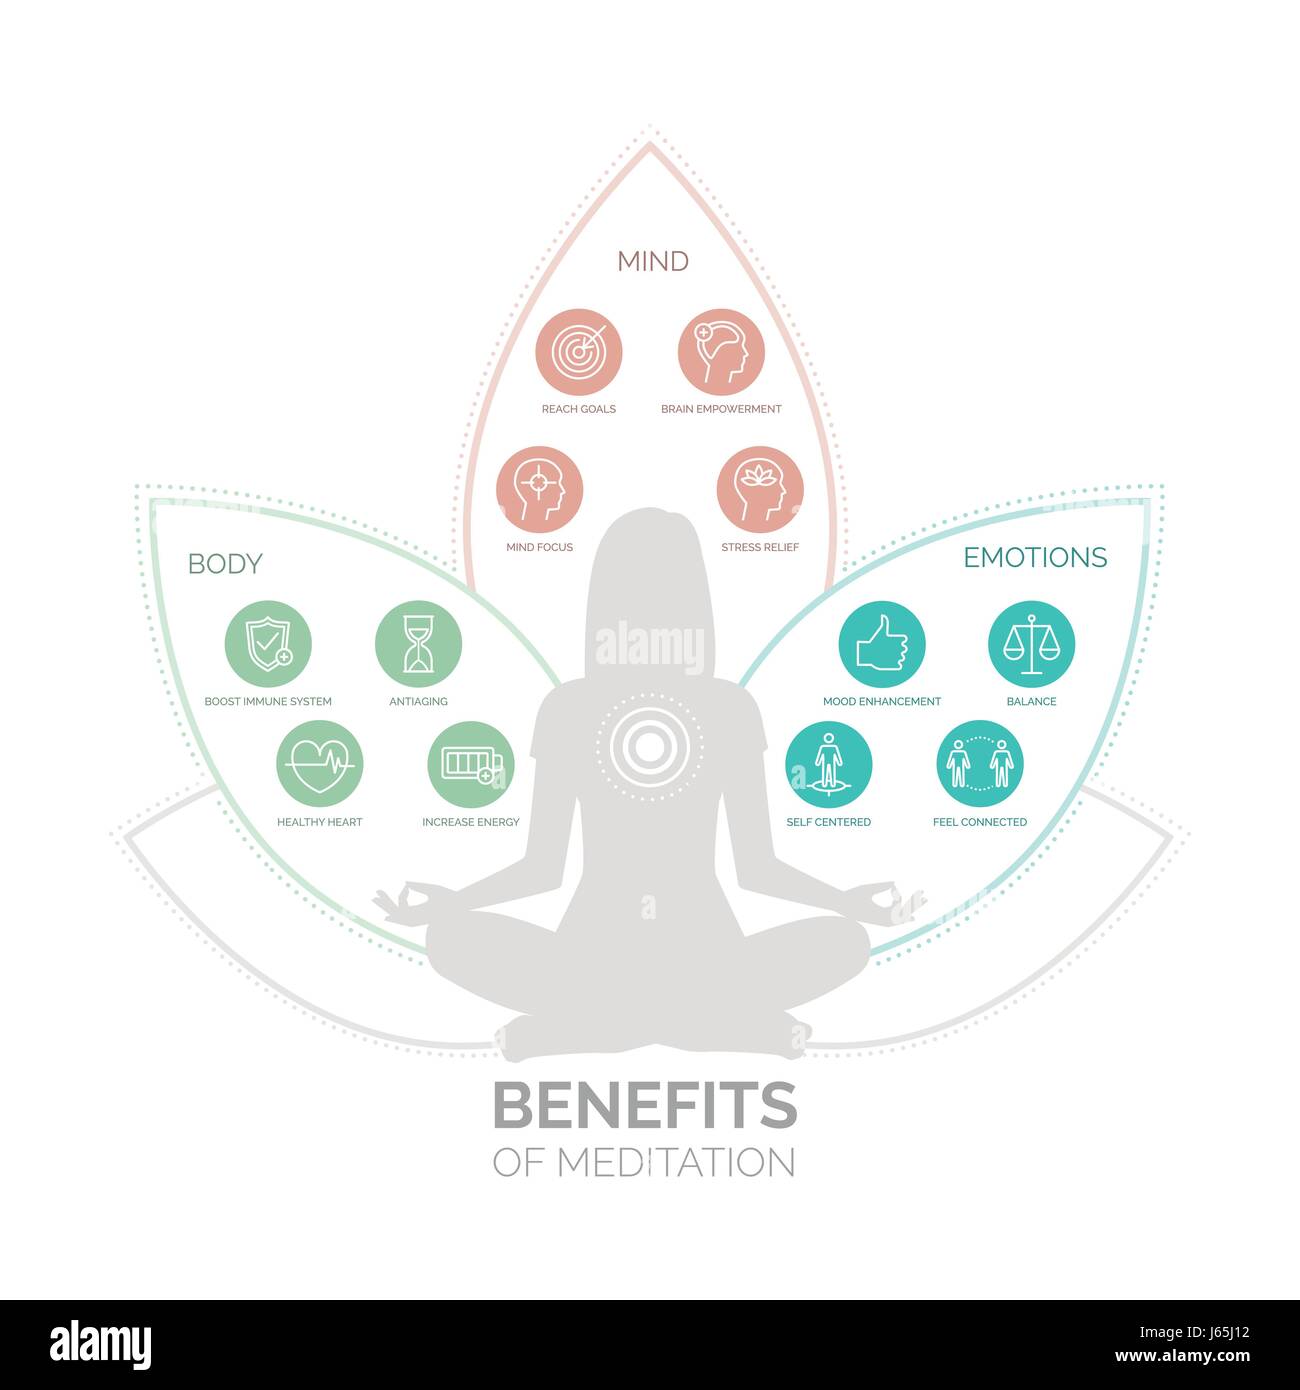 La méditation bénéfique pour la santé des corps, esprit et émotions, vector infographic avec icons set Illustration de Vecteur